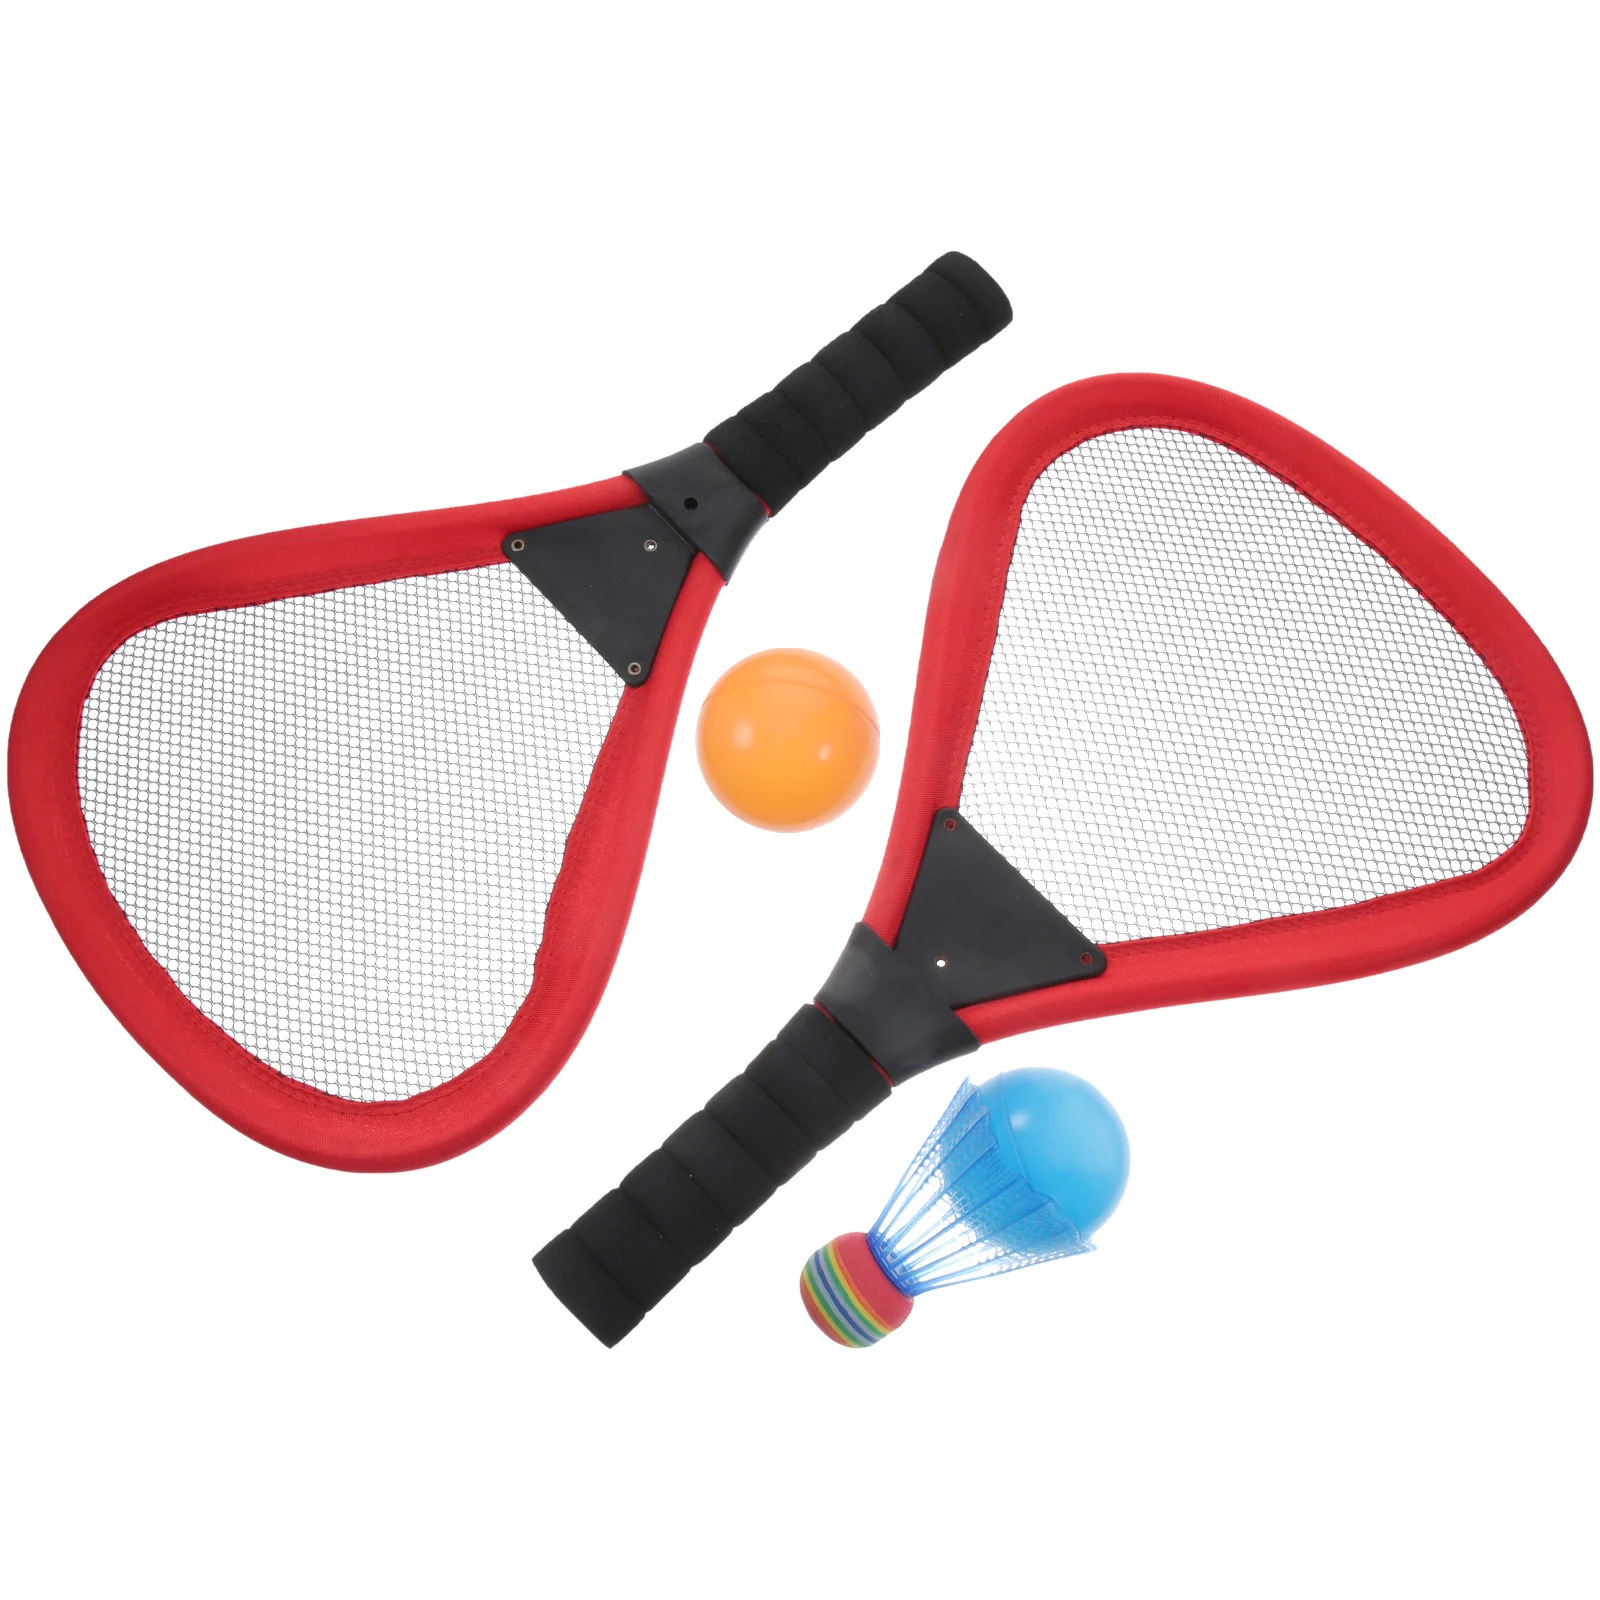 

Детские теннисные ракетки 5 шт., пляжные ракетки, Детские уличные принадлежности (Красные ракетки 2 шт., 1 шт. для бадминтона, 2 шт.